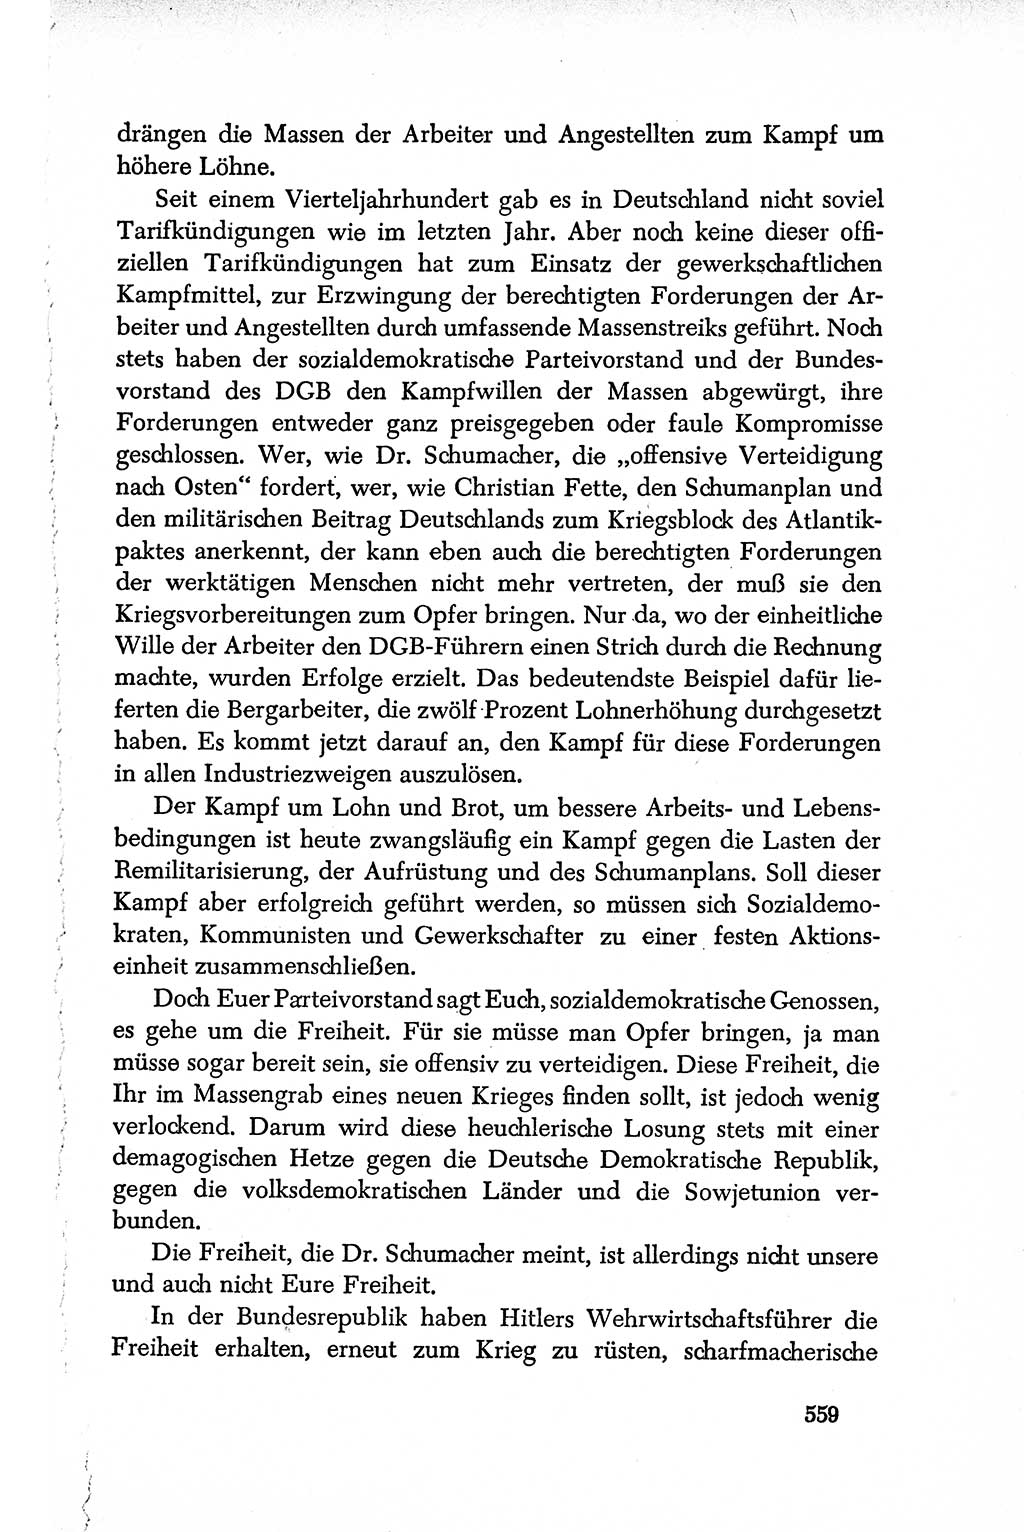 Dokumente der Sozialistischen Einheitspartei Deutschlands (SED) [Deutsche Demokratische Republik (DDR)] 1950-1952, Seite 559 (Dok. SED DDR 1950-1952, S. 559)